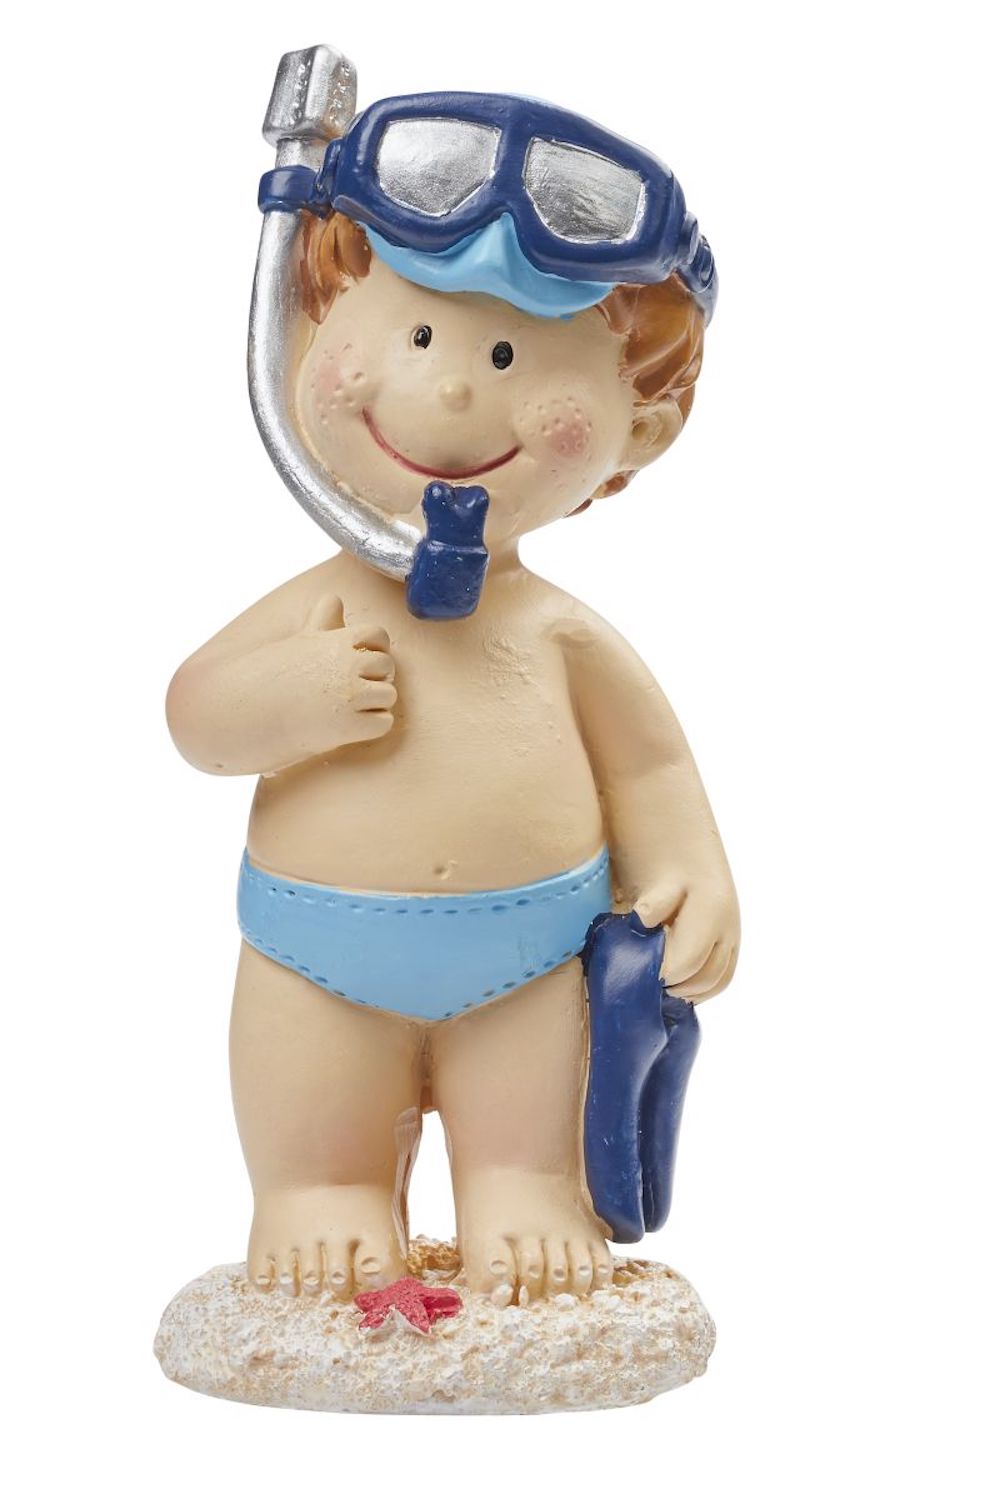 Badefigur Junge mit Tauch-Ausrüstung, ca. 8cm, stehend